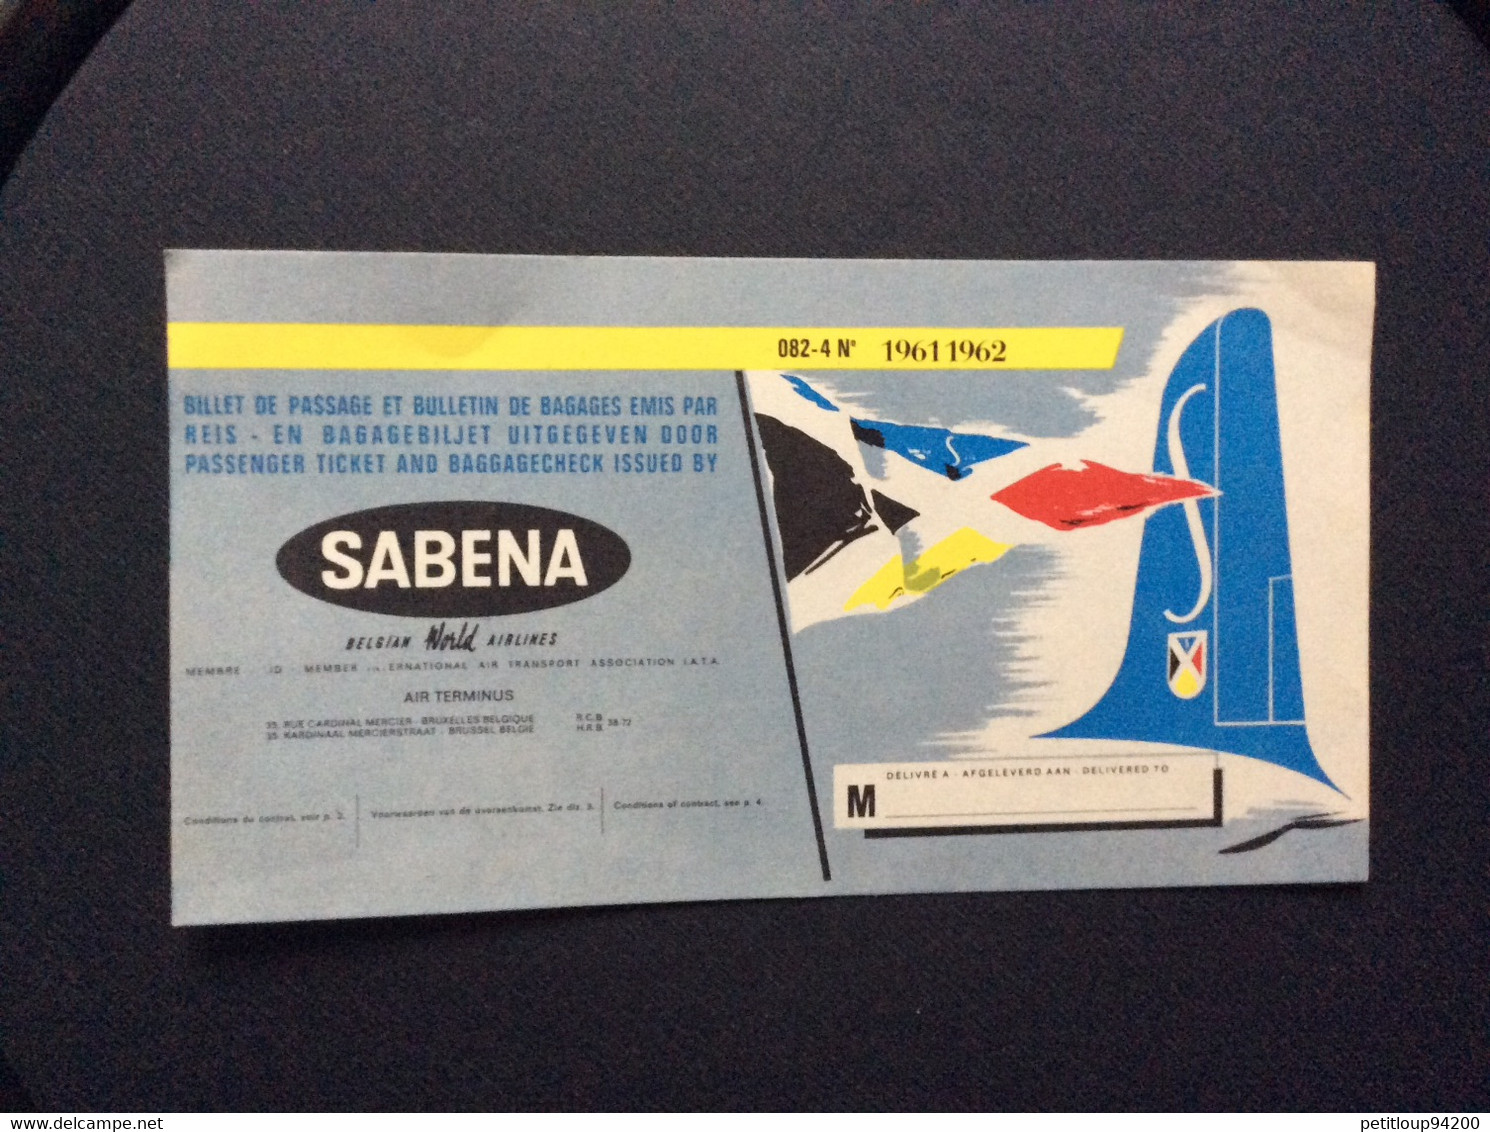 SABENA  Publicite  BILLET DE PASSAGE ET BULLETIN DE BAGAGES  PASSENGER TICKET AND BAGGAGE CHECK  1961 1962 - Publicités